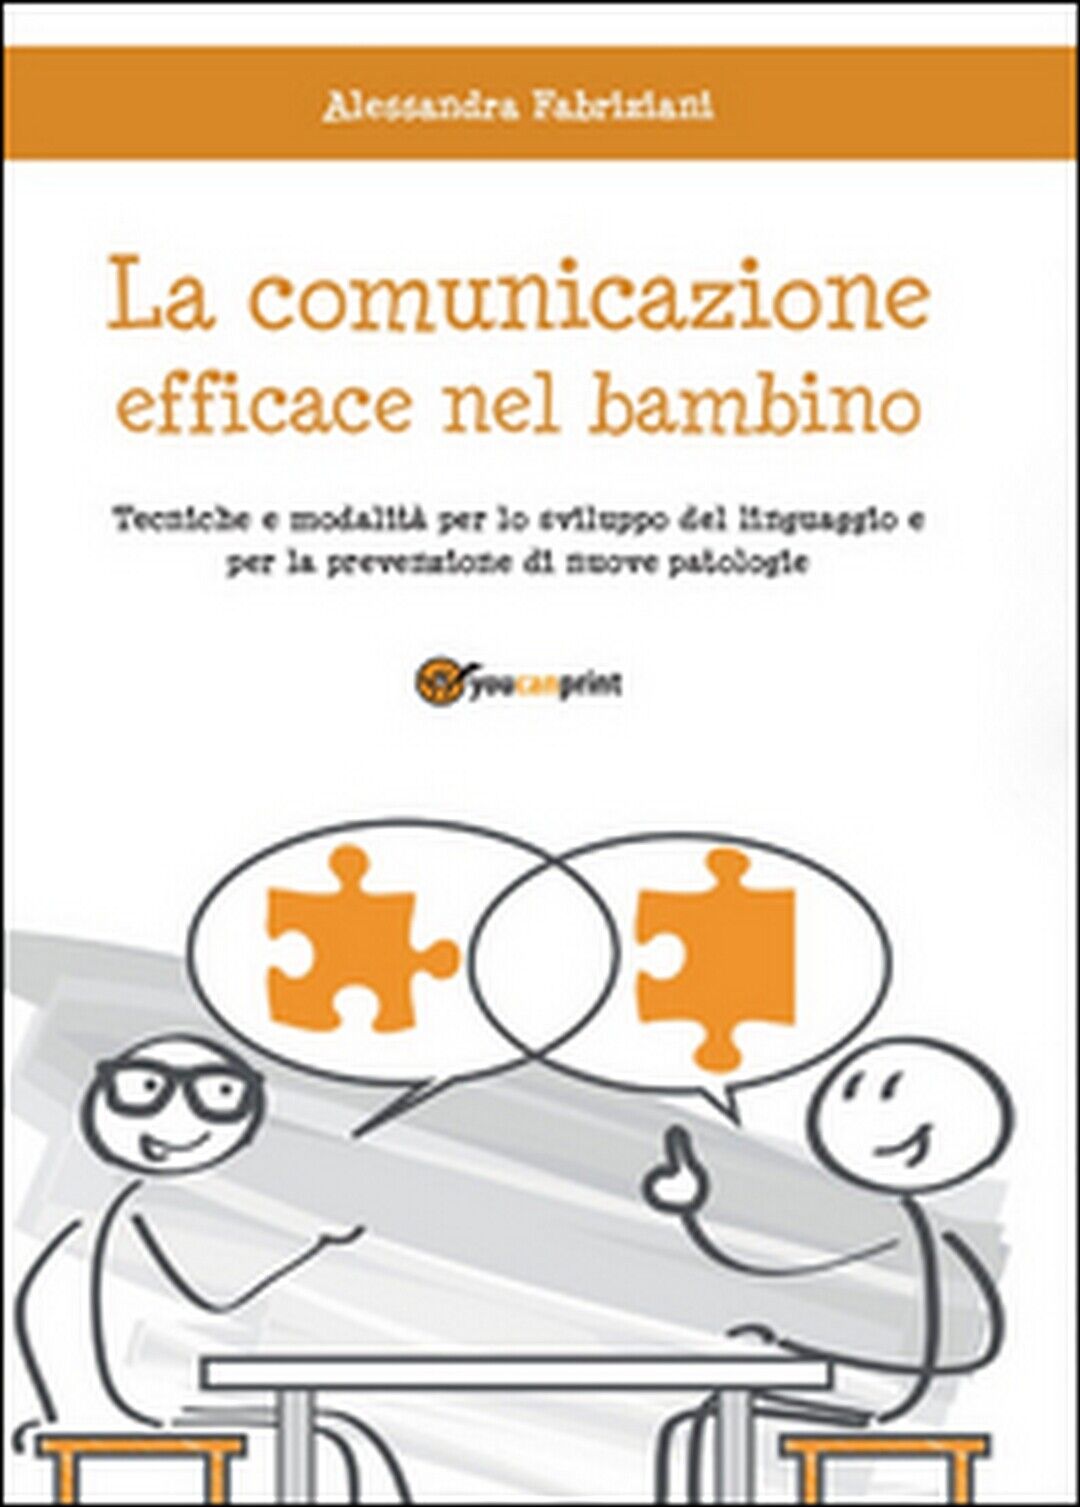 La comunicazione efficace nel bambino,  di Alessandra Fabriziani,  2015